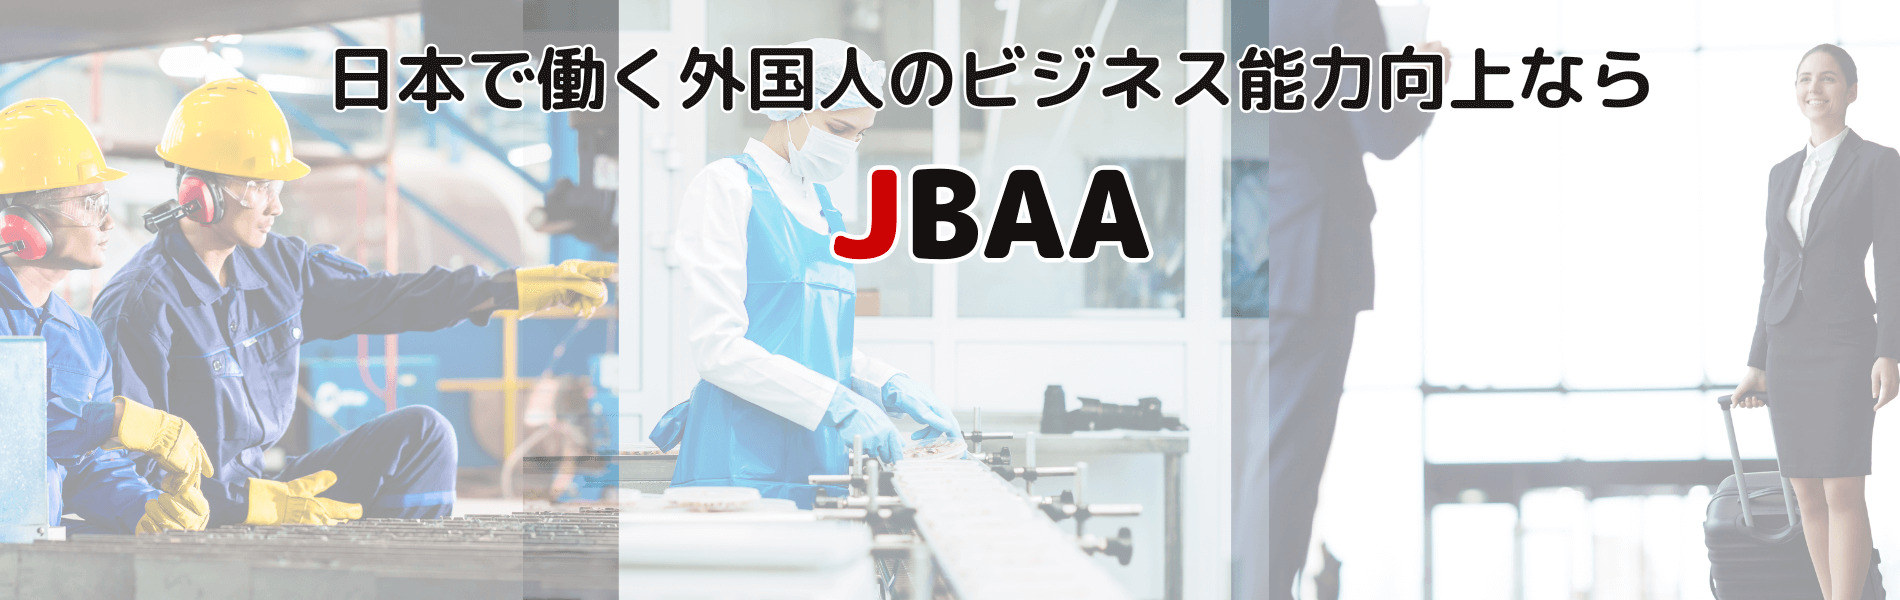 日本で働く外国人のビジネス能力向上ならJBAA